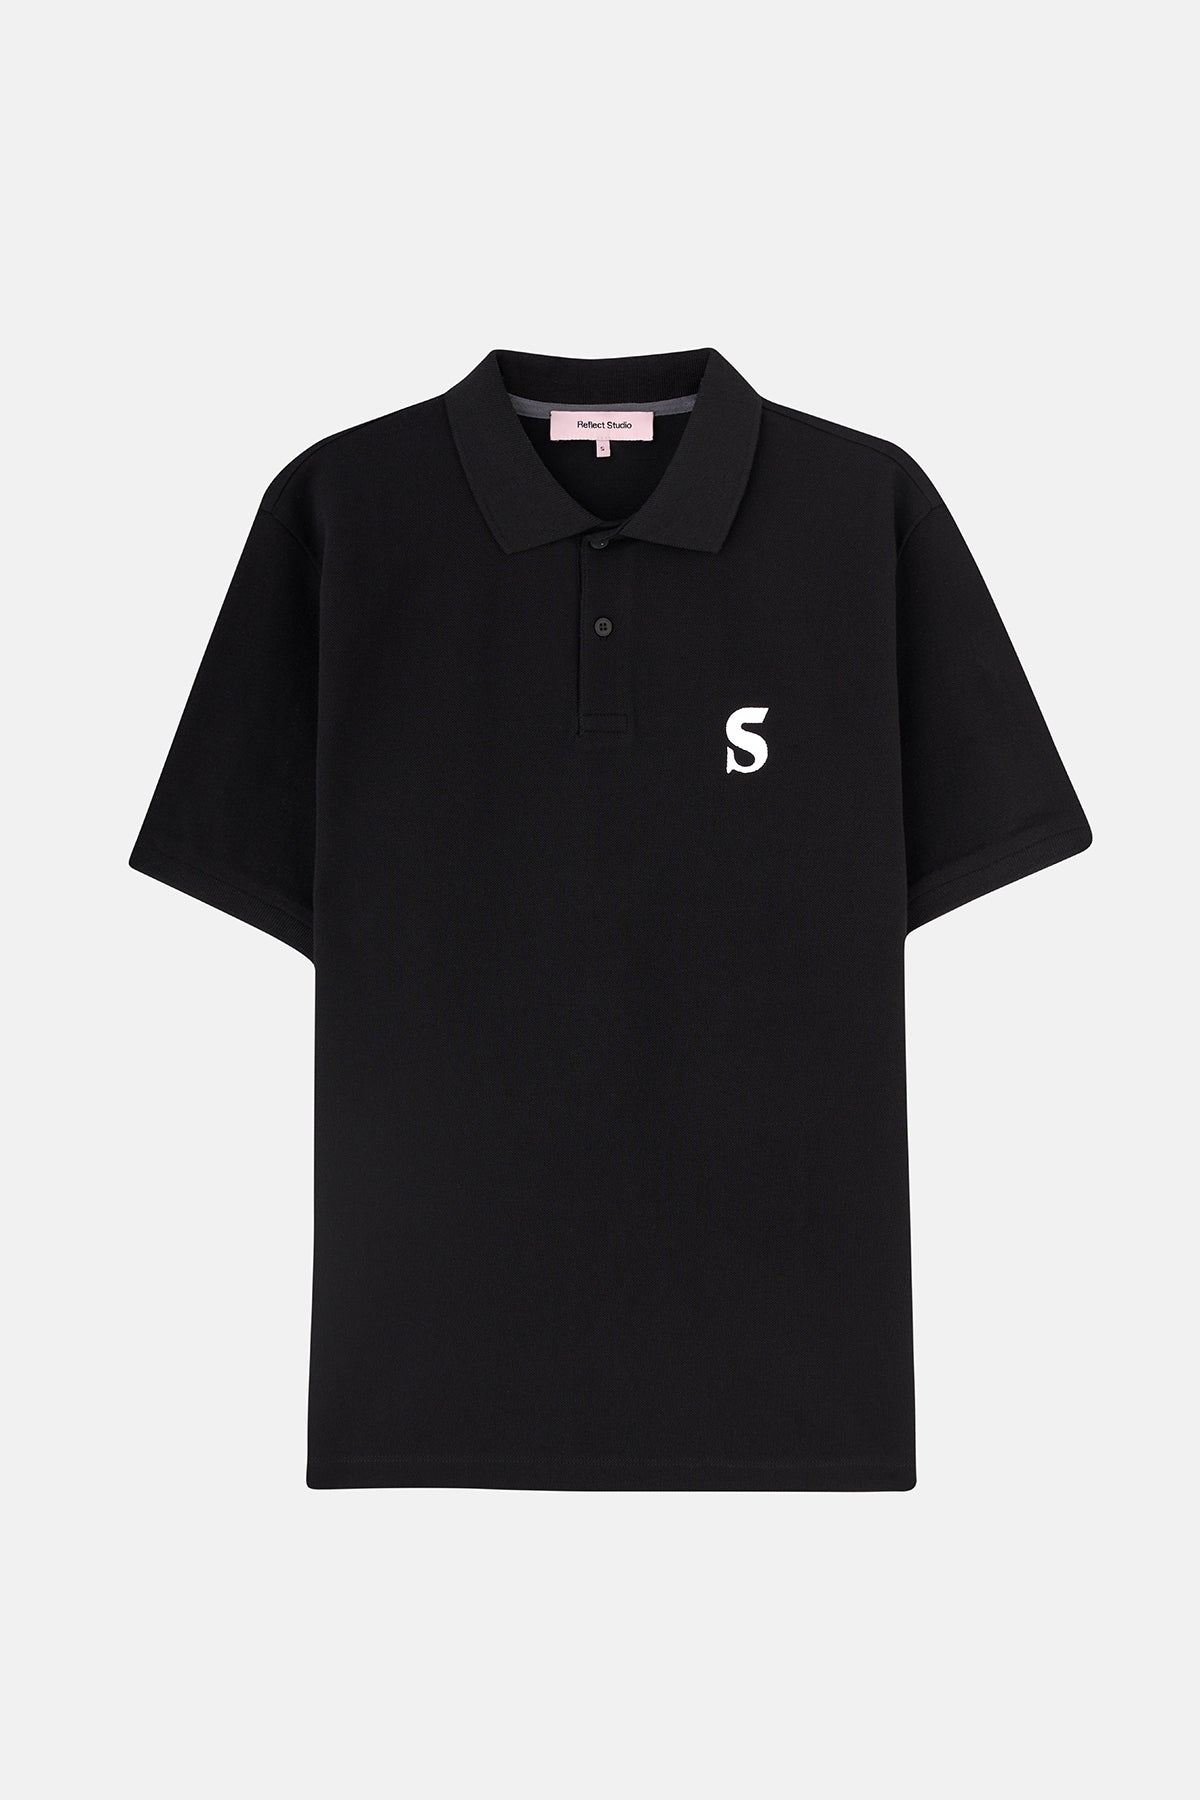 Socrates Logo Polo T-shirt - Siyah